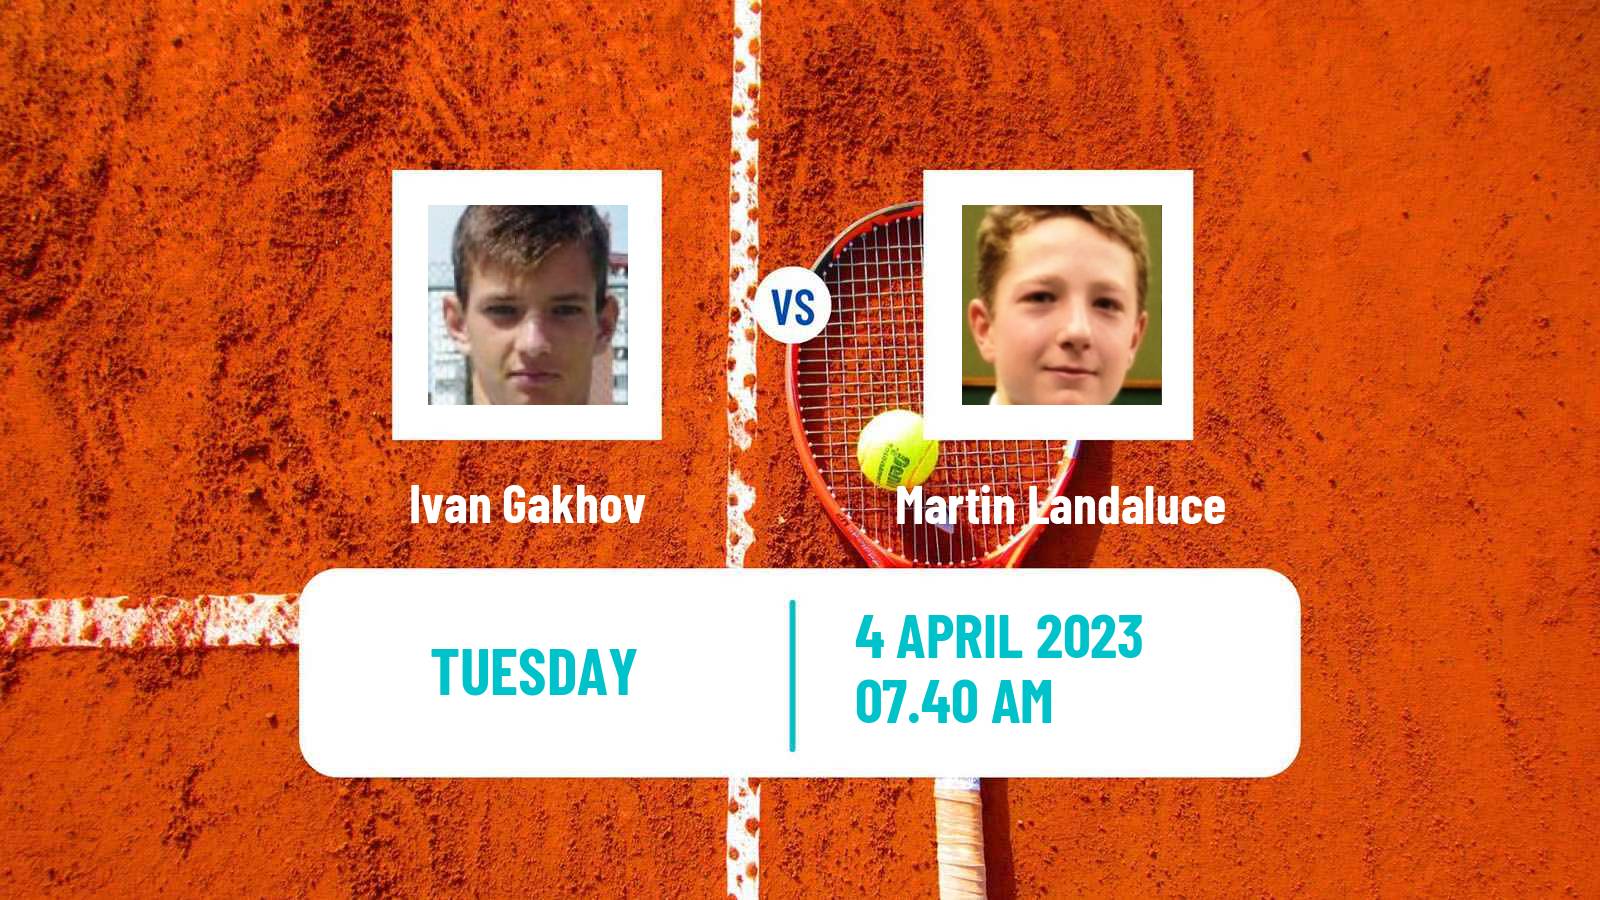 Tennis ATP Challenger Ivan Gakhov - Martin Landaluce